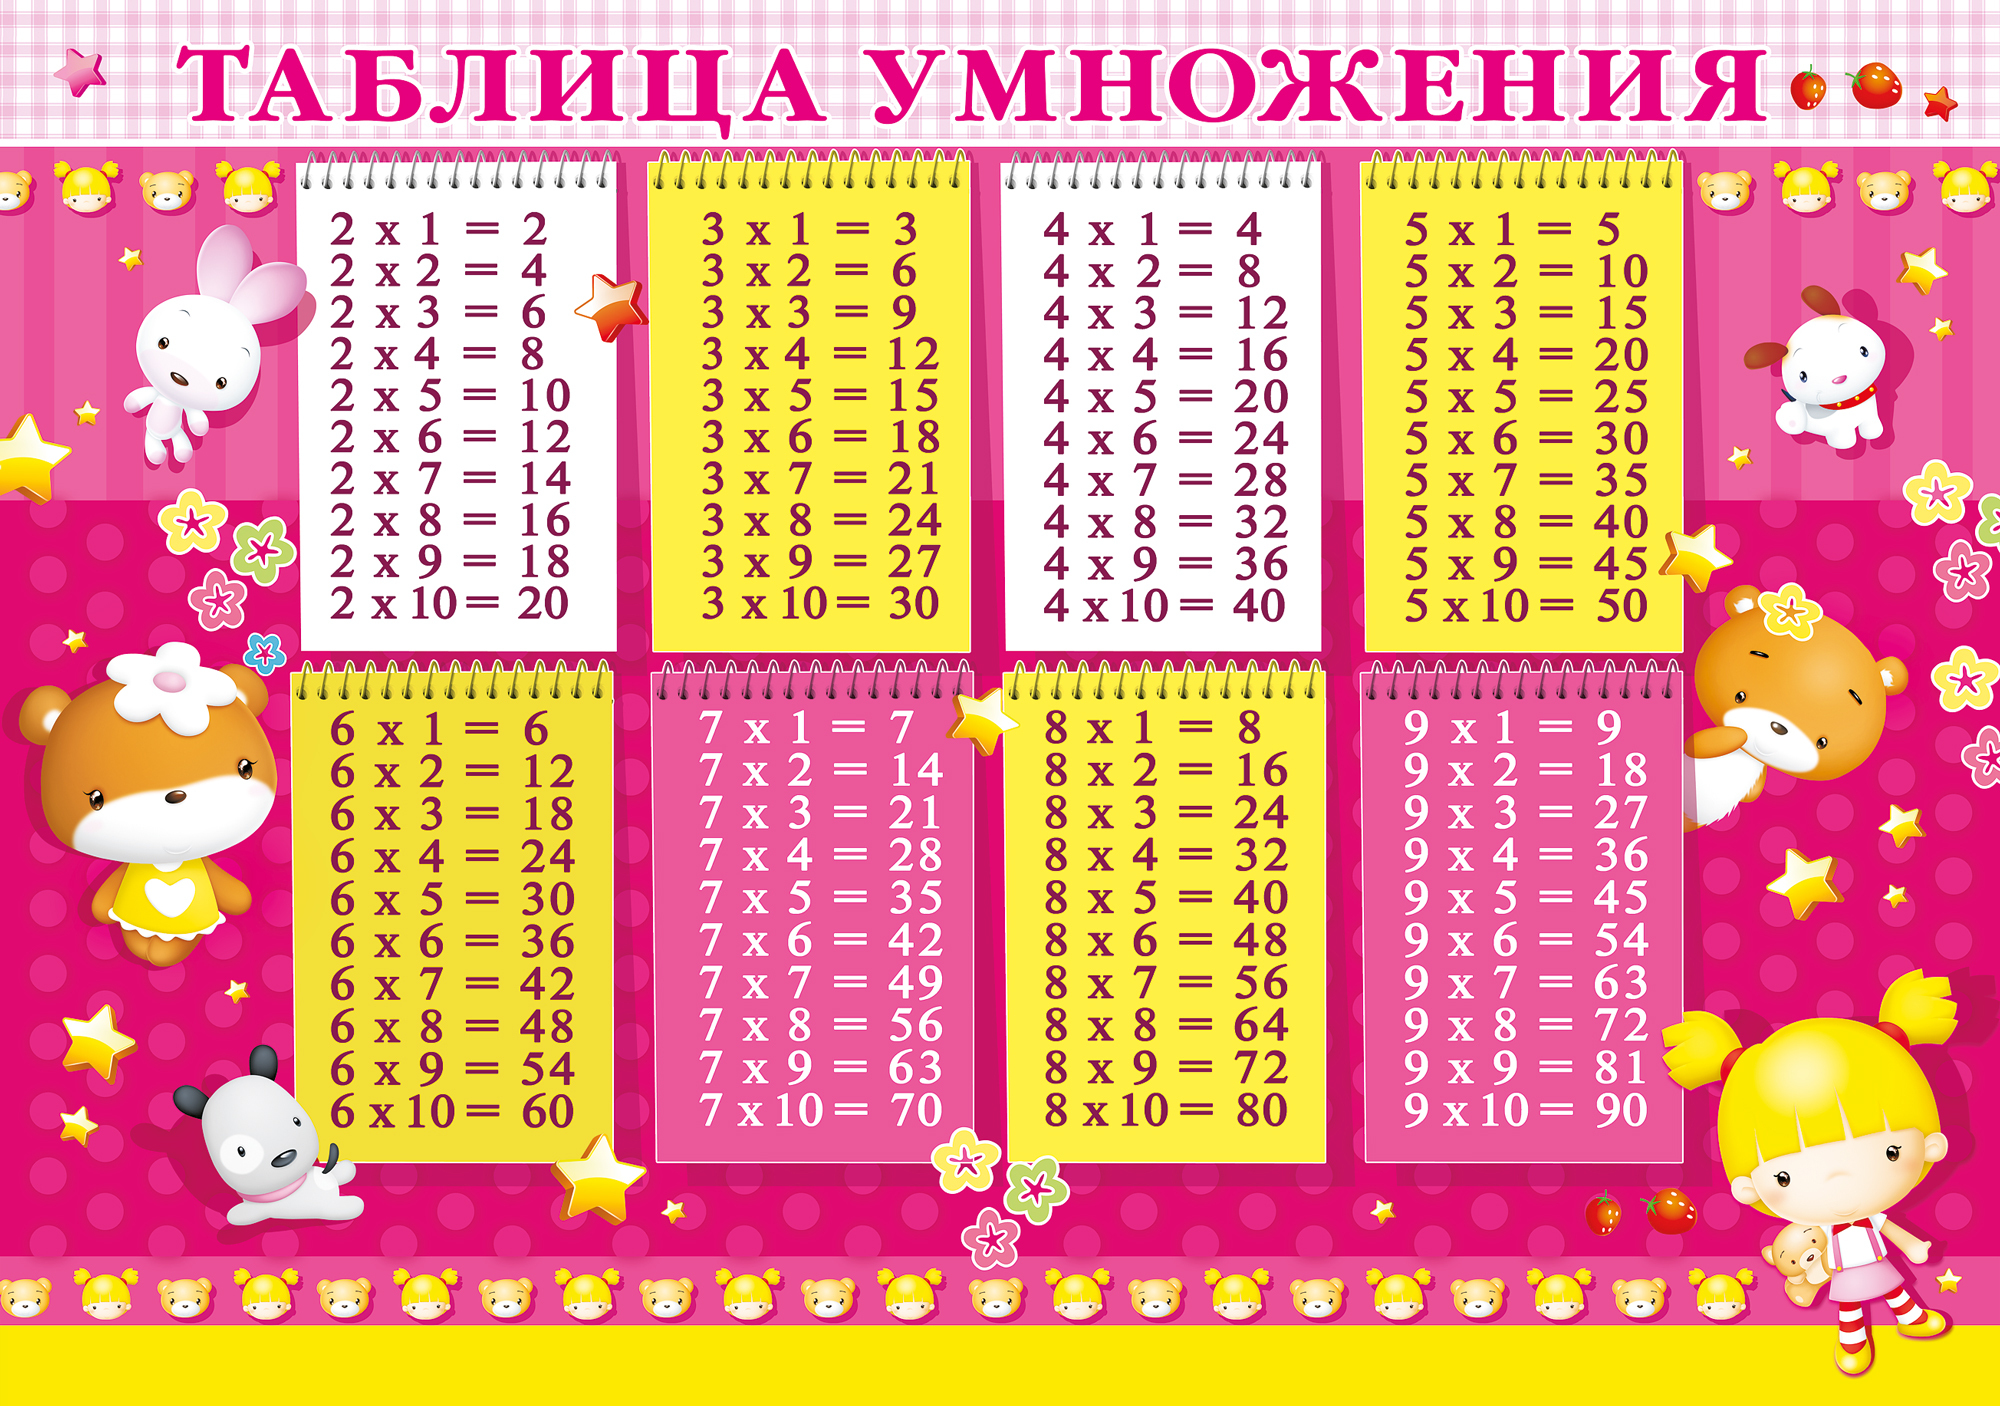 Красочные таблицы. Таблица умножения. У̷м̷н̷о̷ж̷е̷н̷и̷е̷ т̷а̷б̷л̷и̷ц̷а̷. Таблица умножения красивая. Таблица умножения для детей.